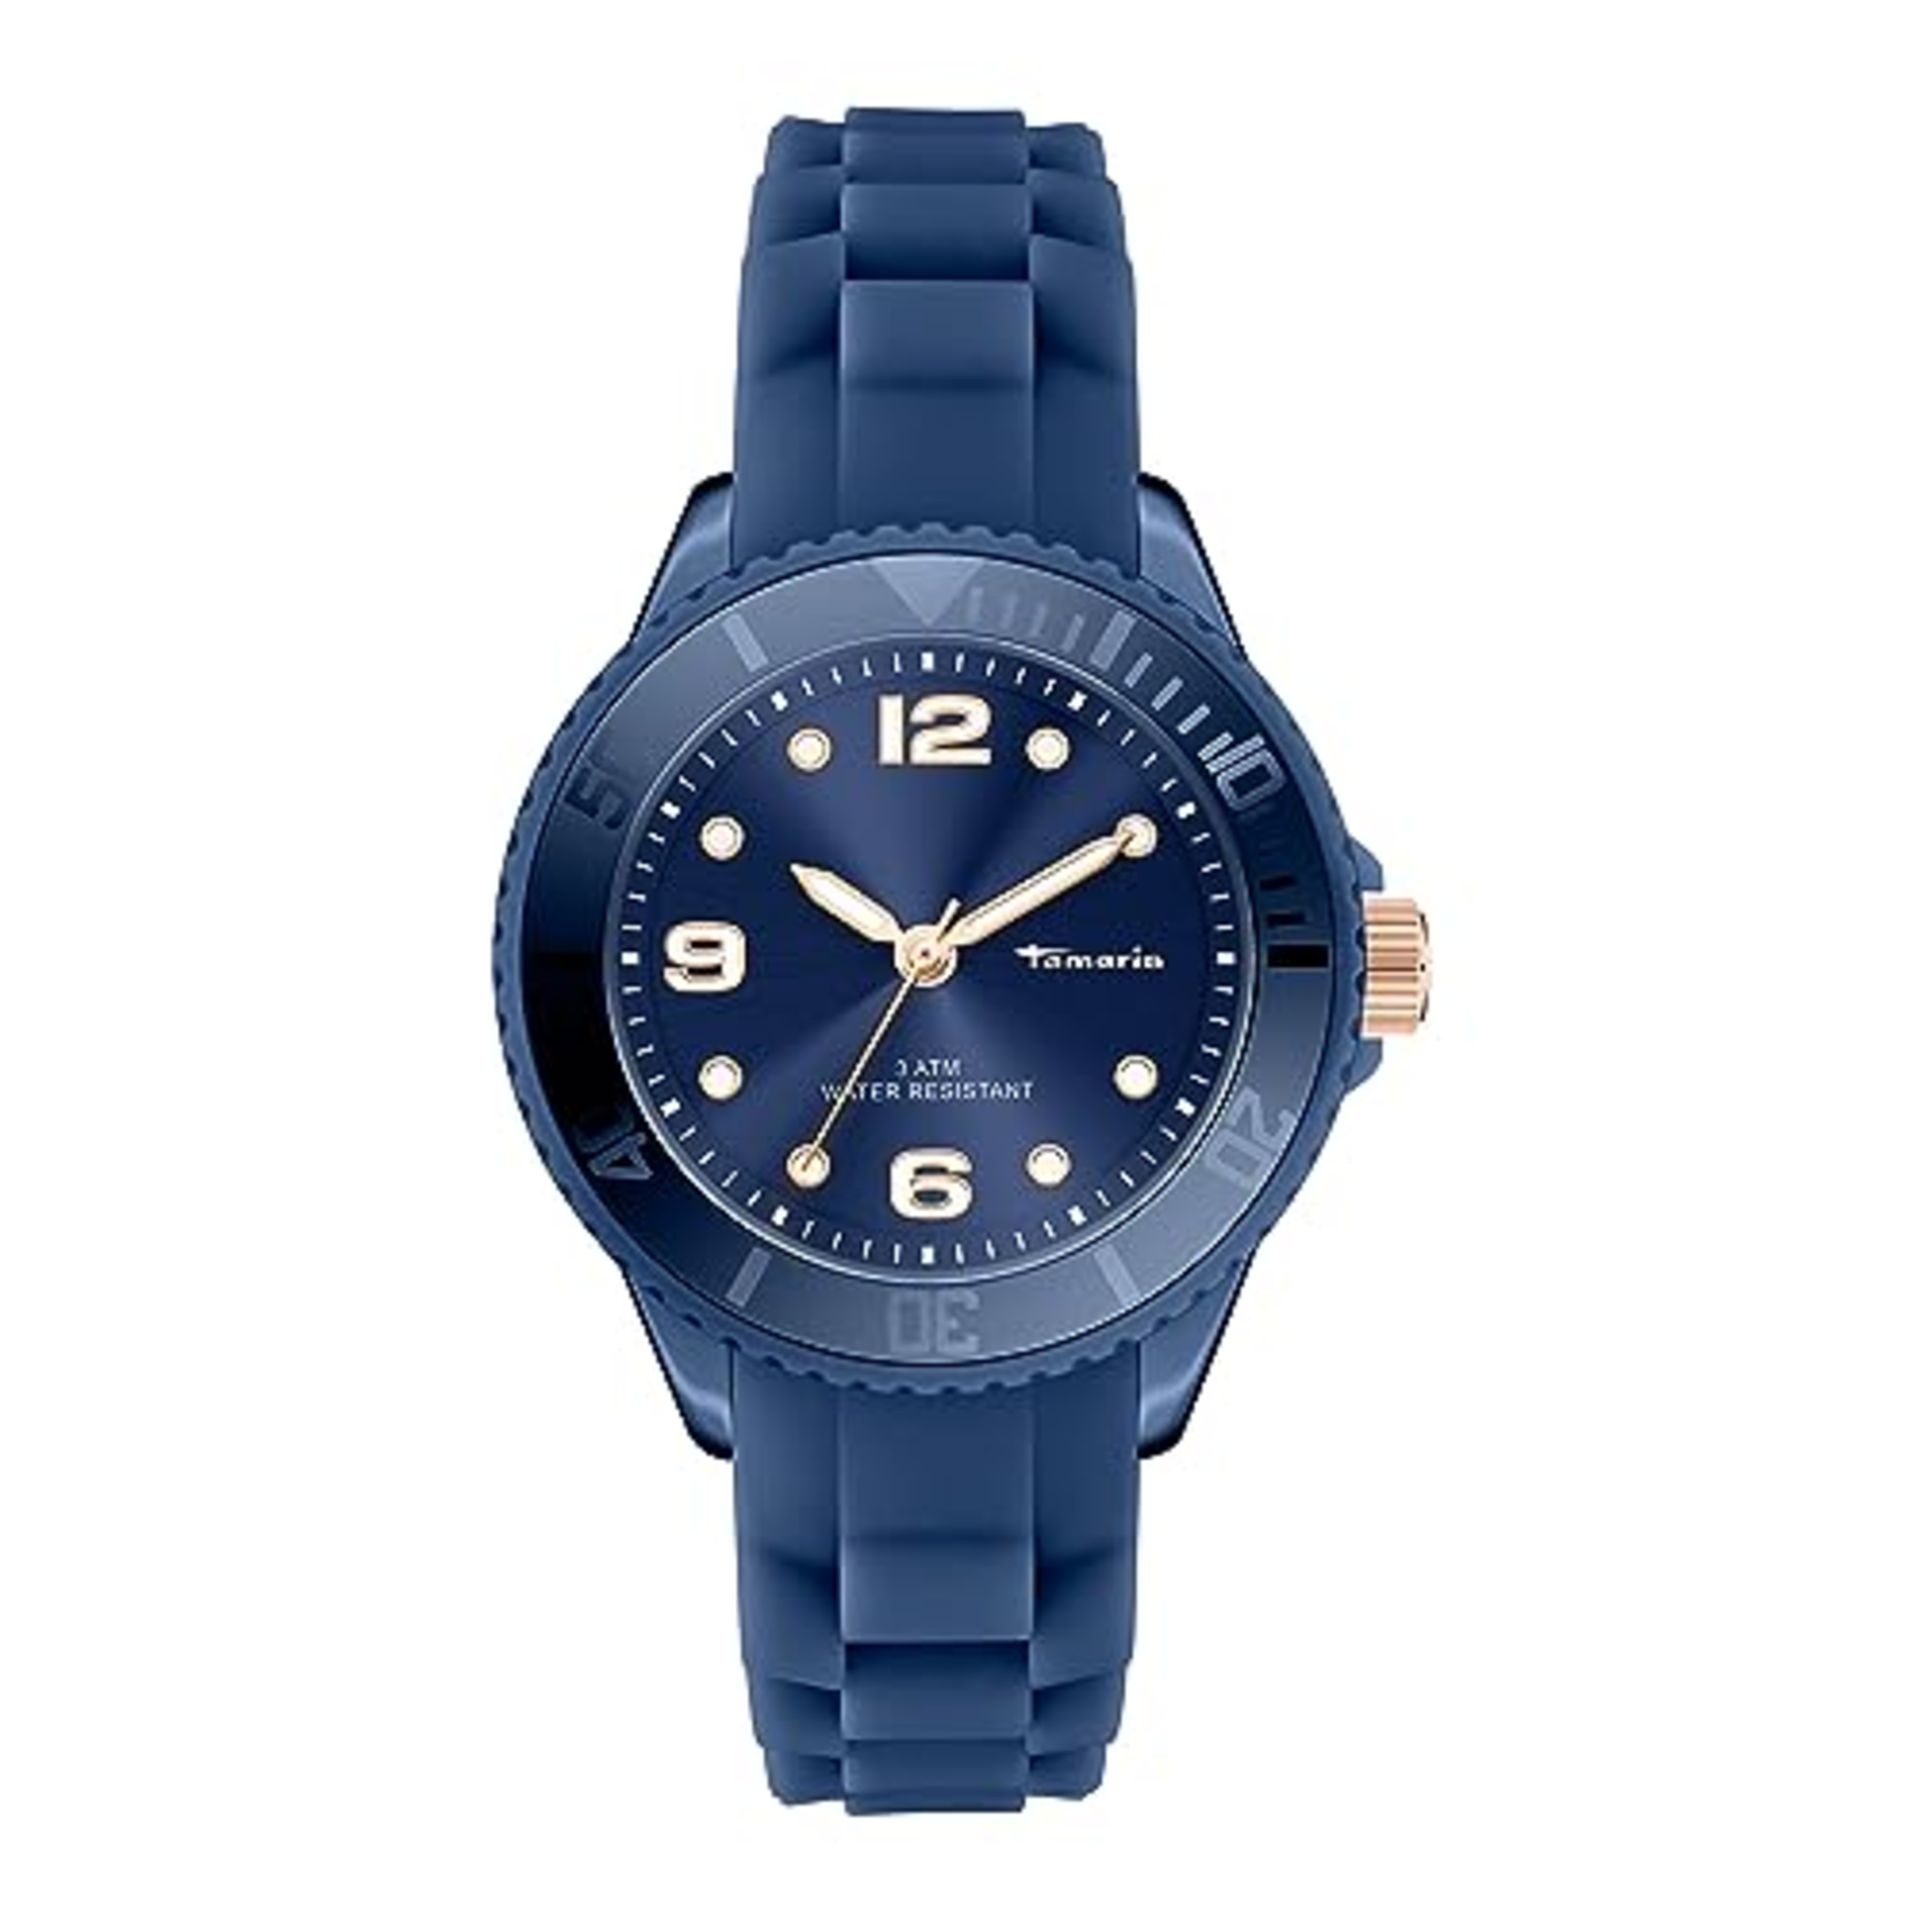 Tamaris Women's Analog Quartz Watch with Silicone Strap TT-0127-PQ, Dark Blue